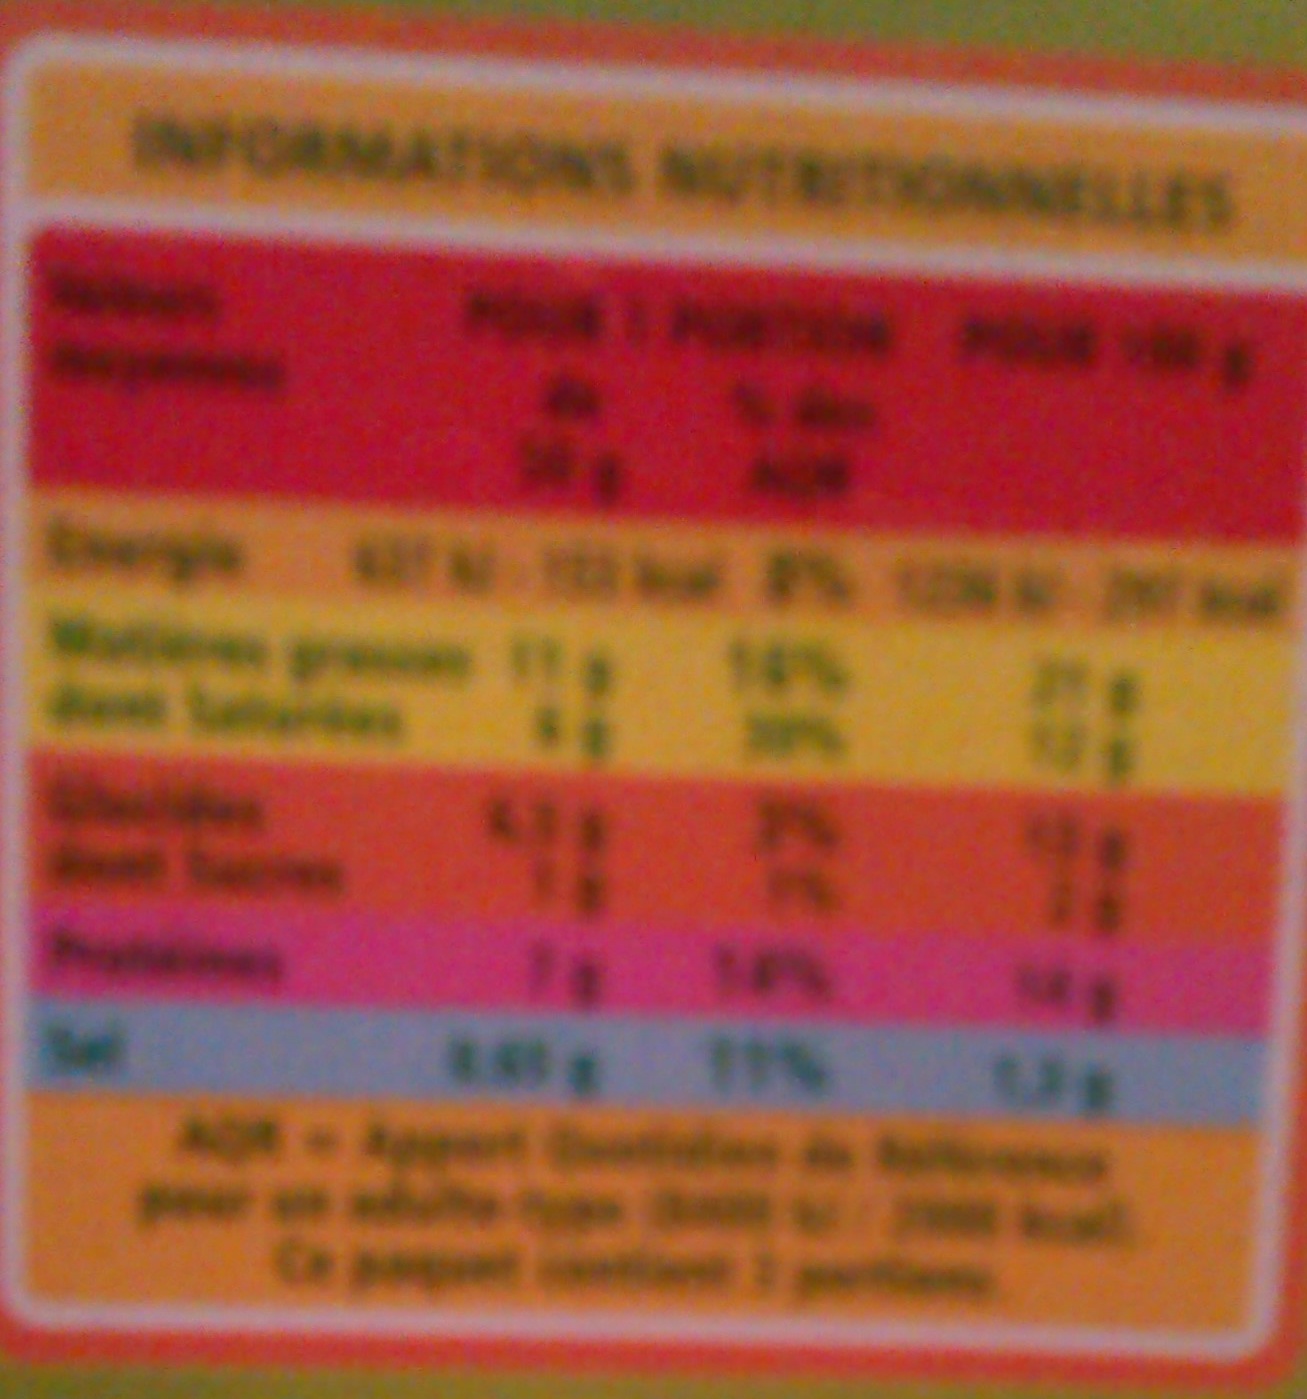 Fromages de chèvre à dorer - Nutrition facts - fr